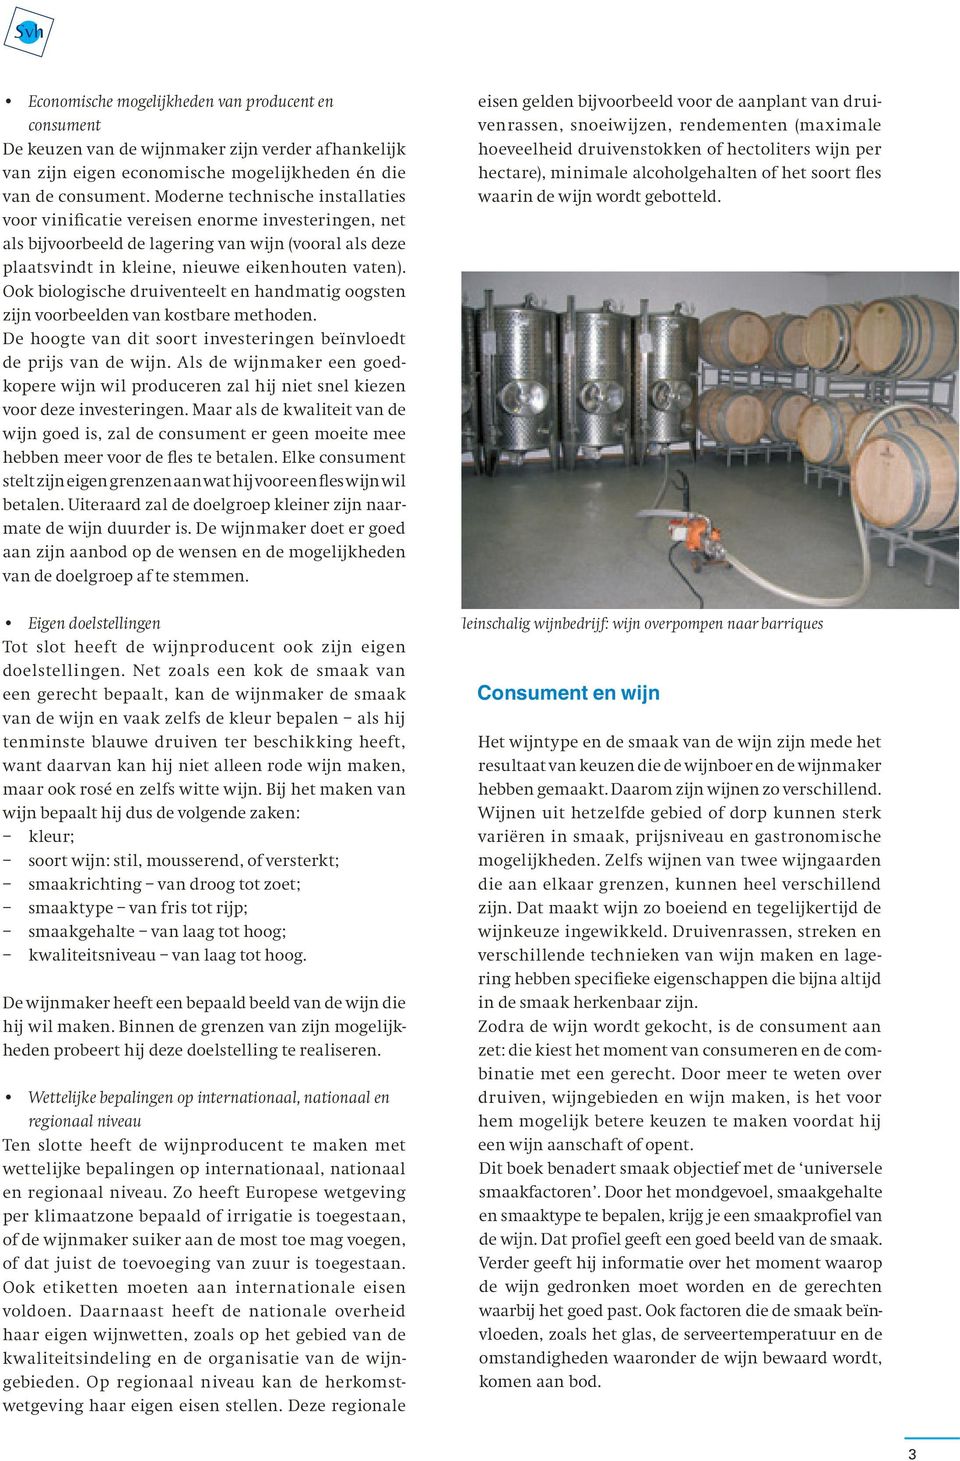 Ook biologische druiventeelt en handmatig oogsten zijn voorbeelden van kostbare methoden. De hoogte van dit soort investeringen beïnvloedt de prijs van de wijn.